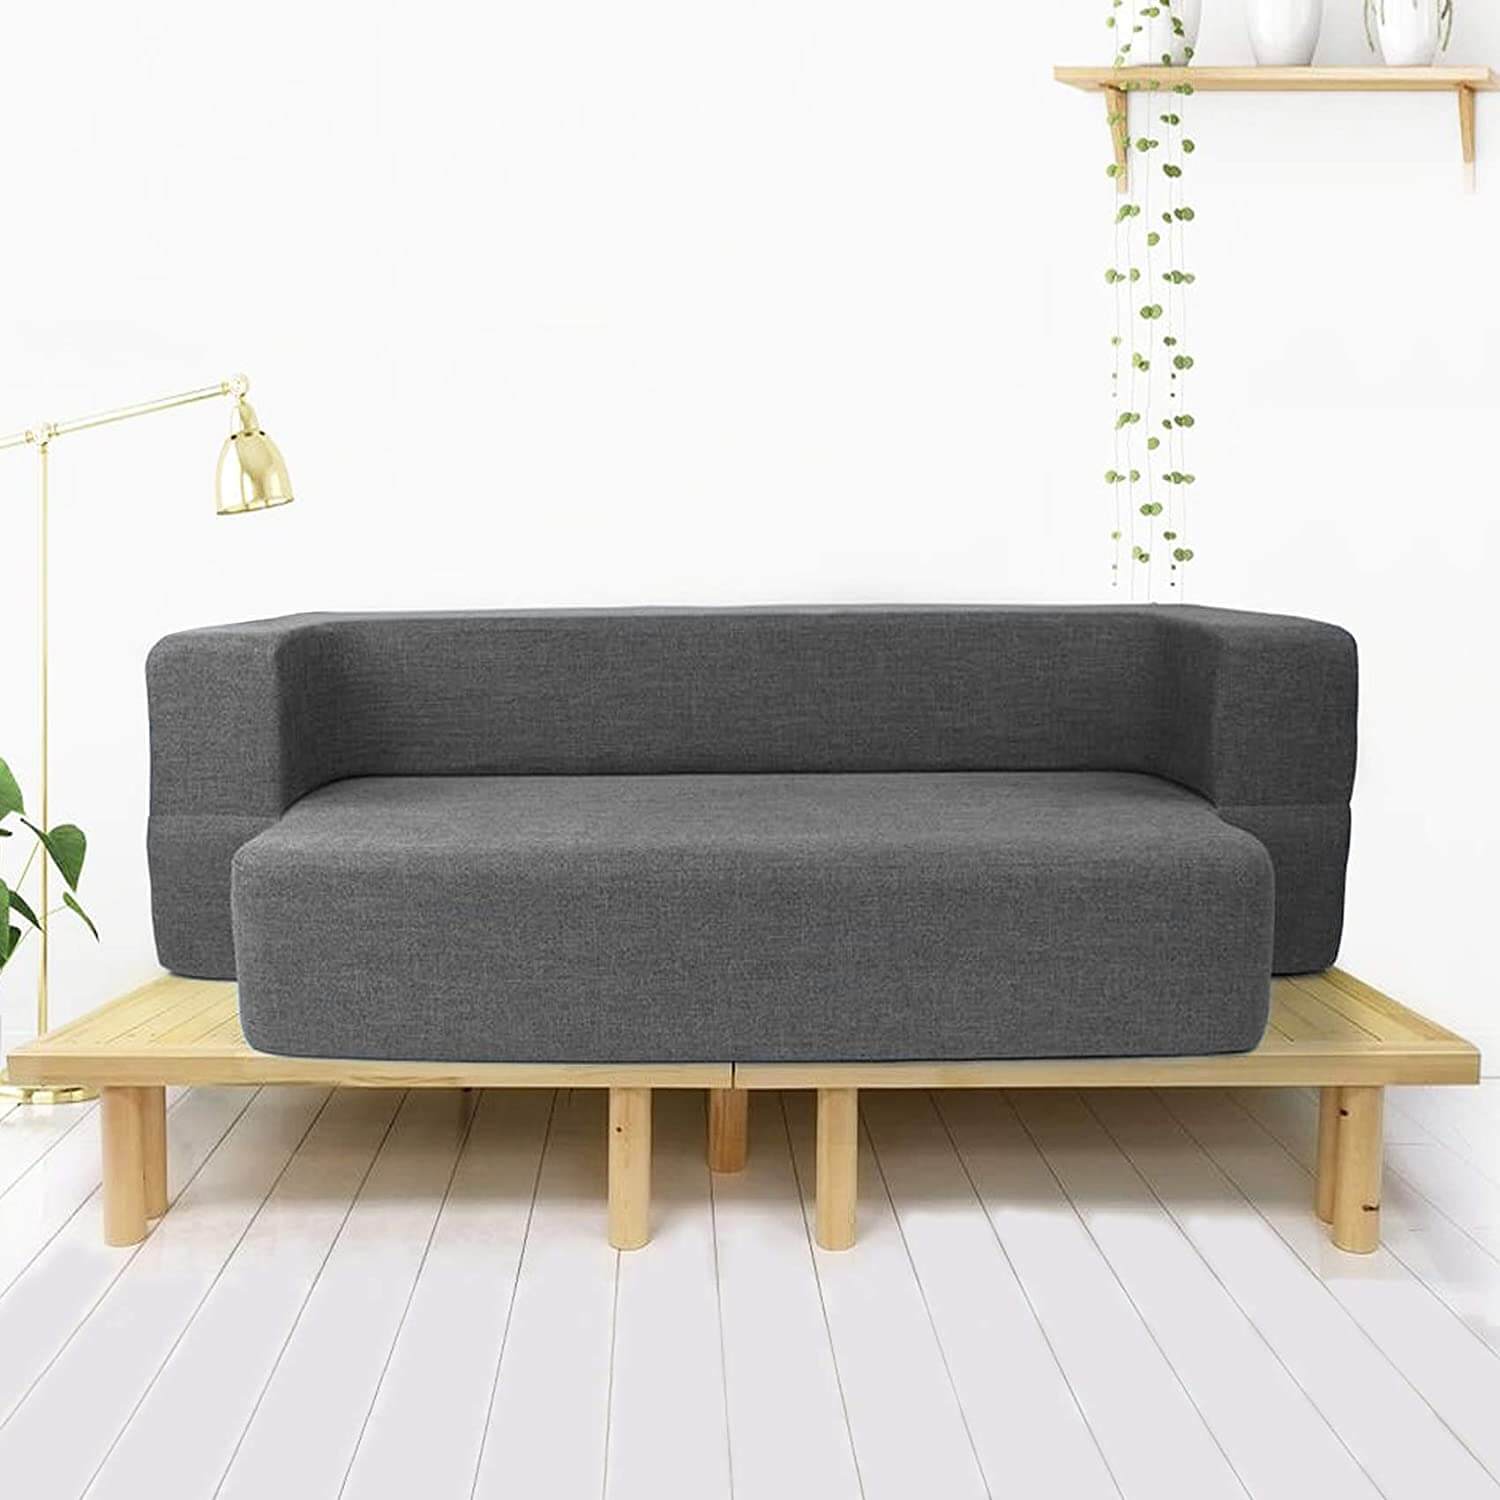 Lounger Sofa Online Best